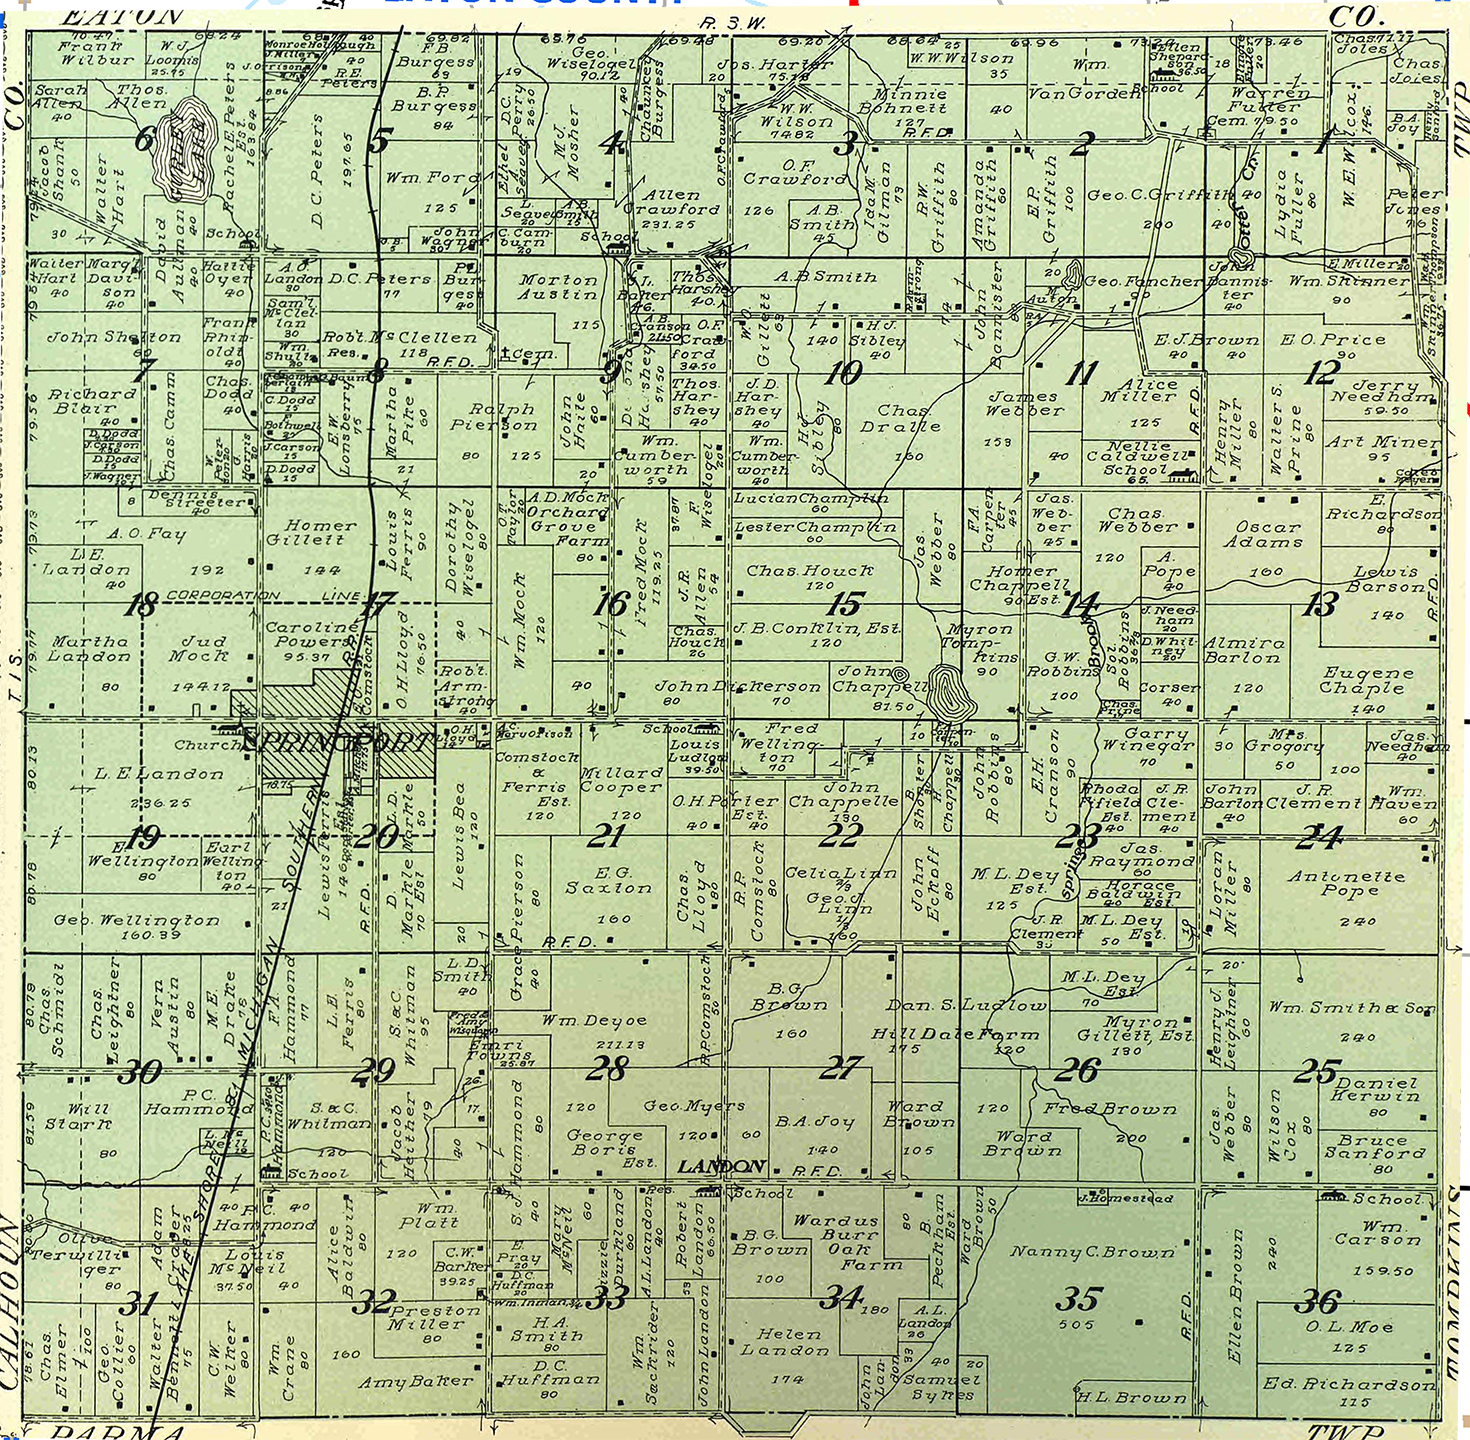 1911 Springport Township, Michigan landownership map